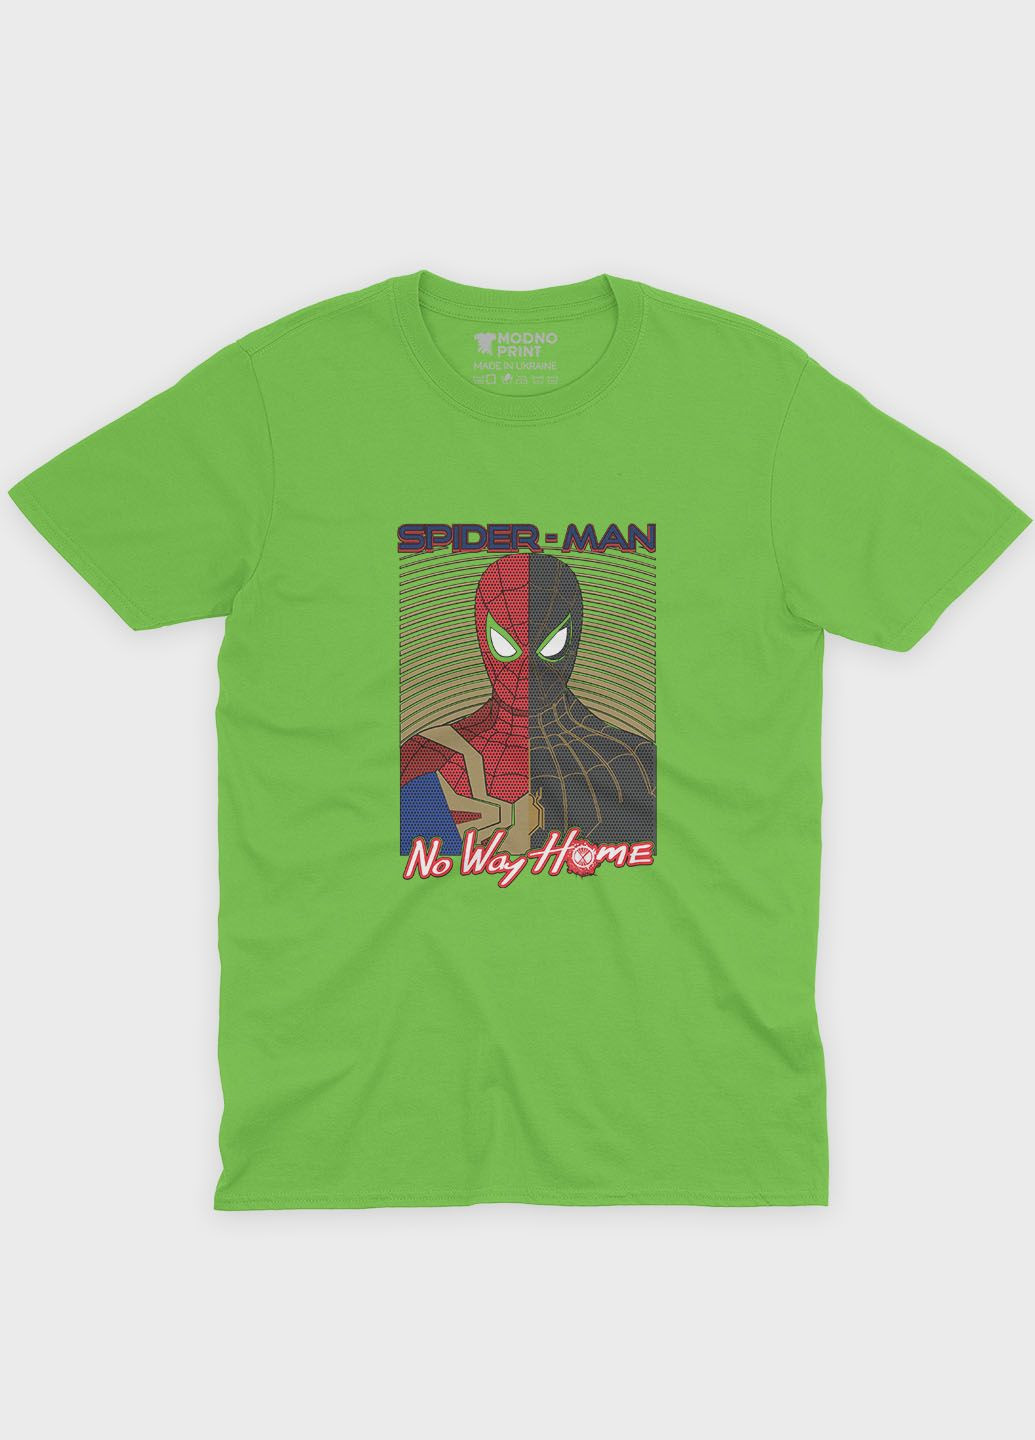 Салатовая демисезонная футболка для мальчика с принтом супергероя - человек-паук (ts001-1-kiw-006-014-009-b) Modno